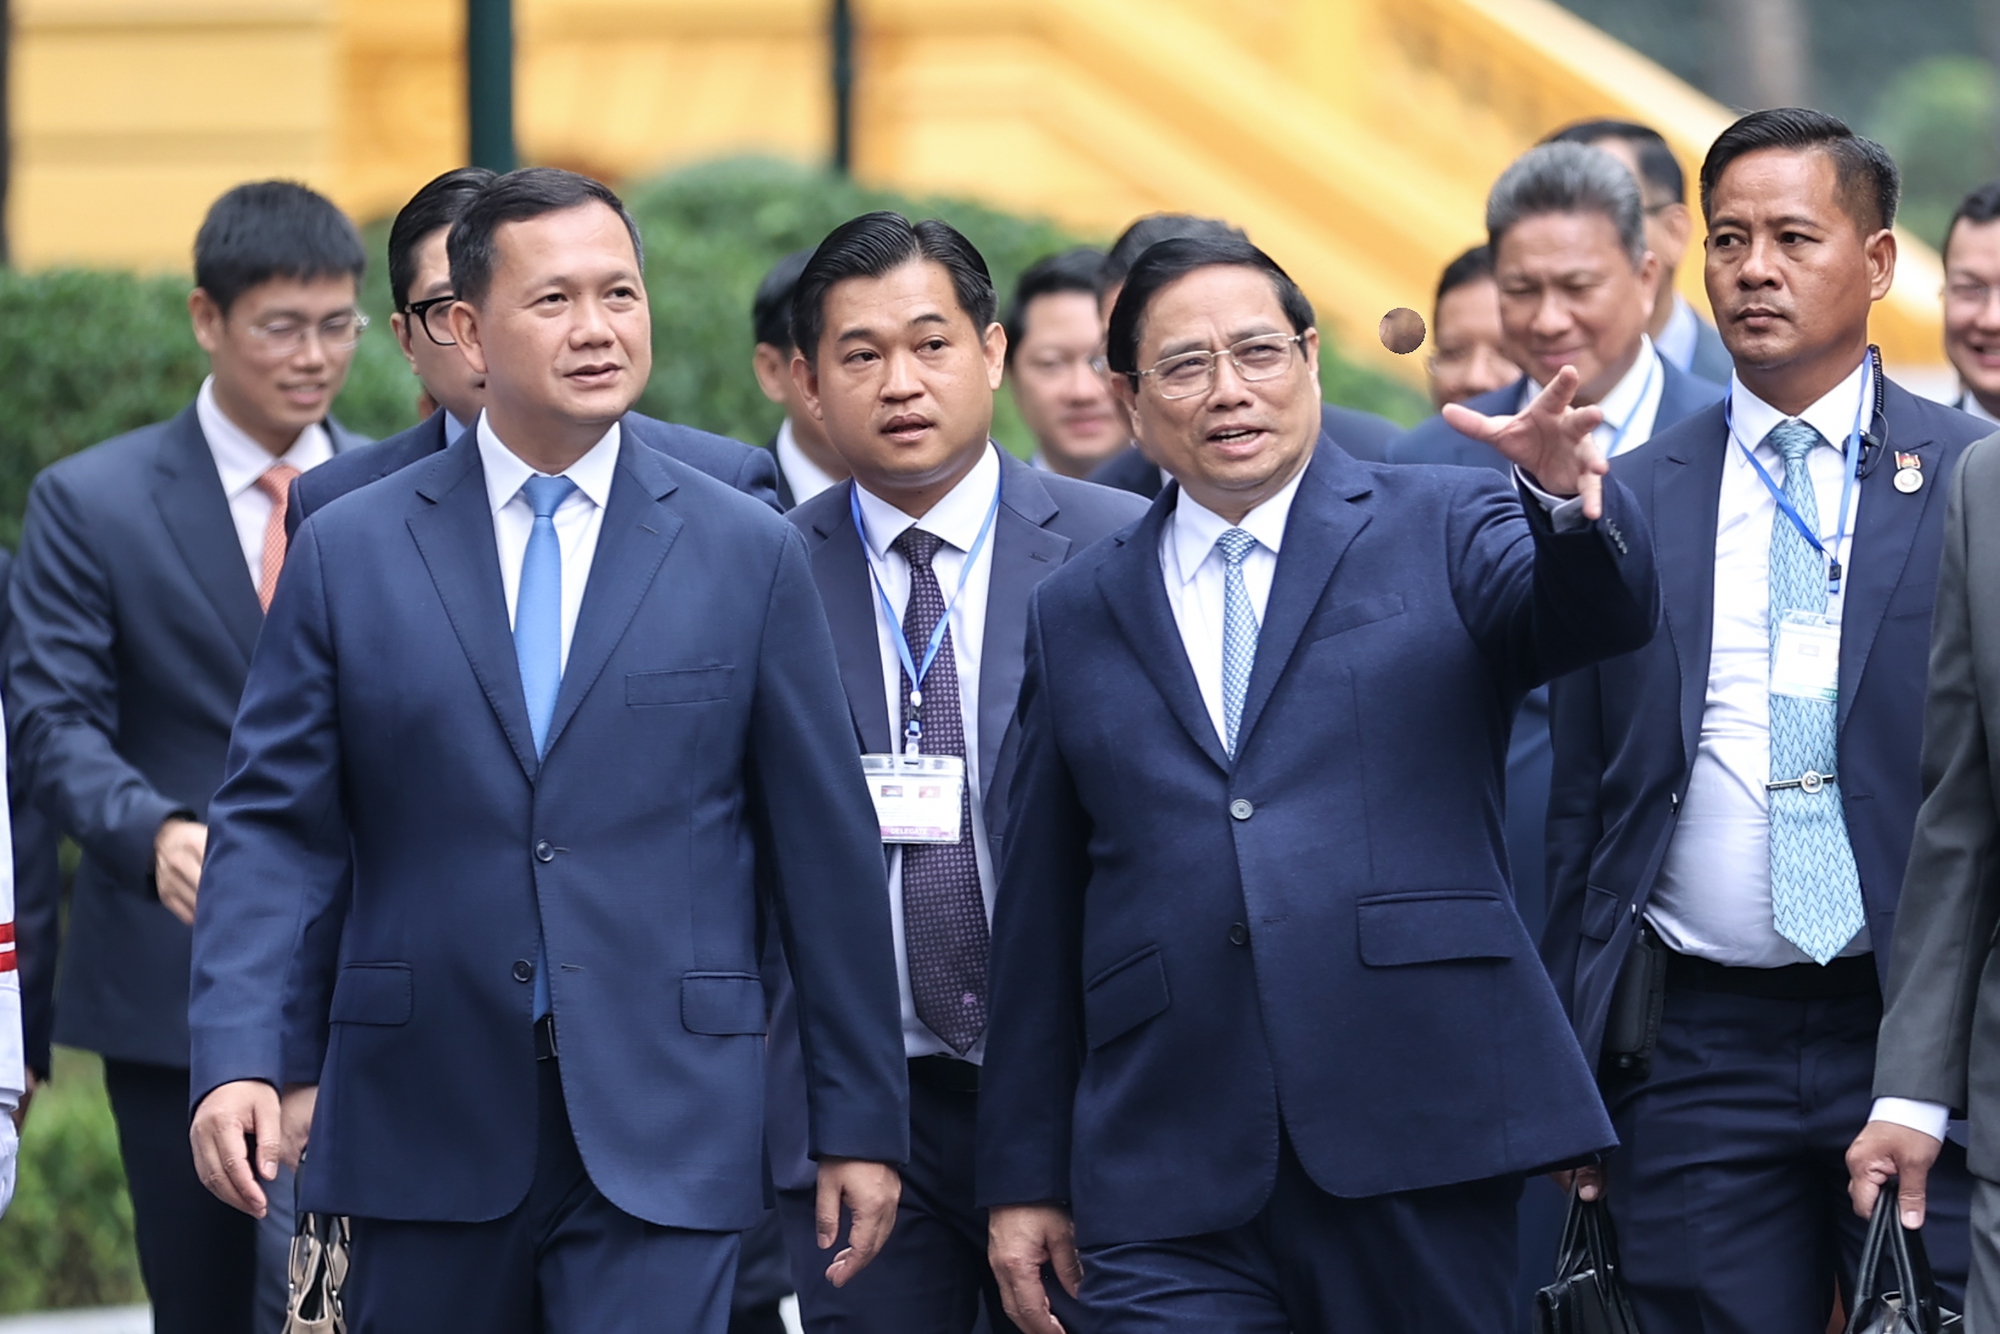 Cận cảnh lễ đón Thủ tướng Campuchia Hun Manet lần đầu thăm Việt Nam - Ảnh 6.